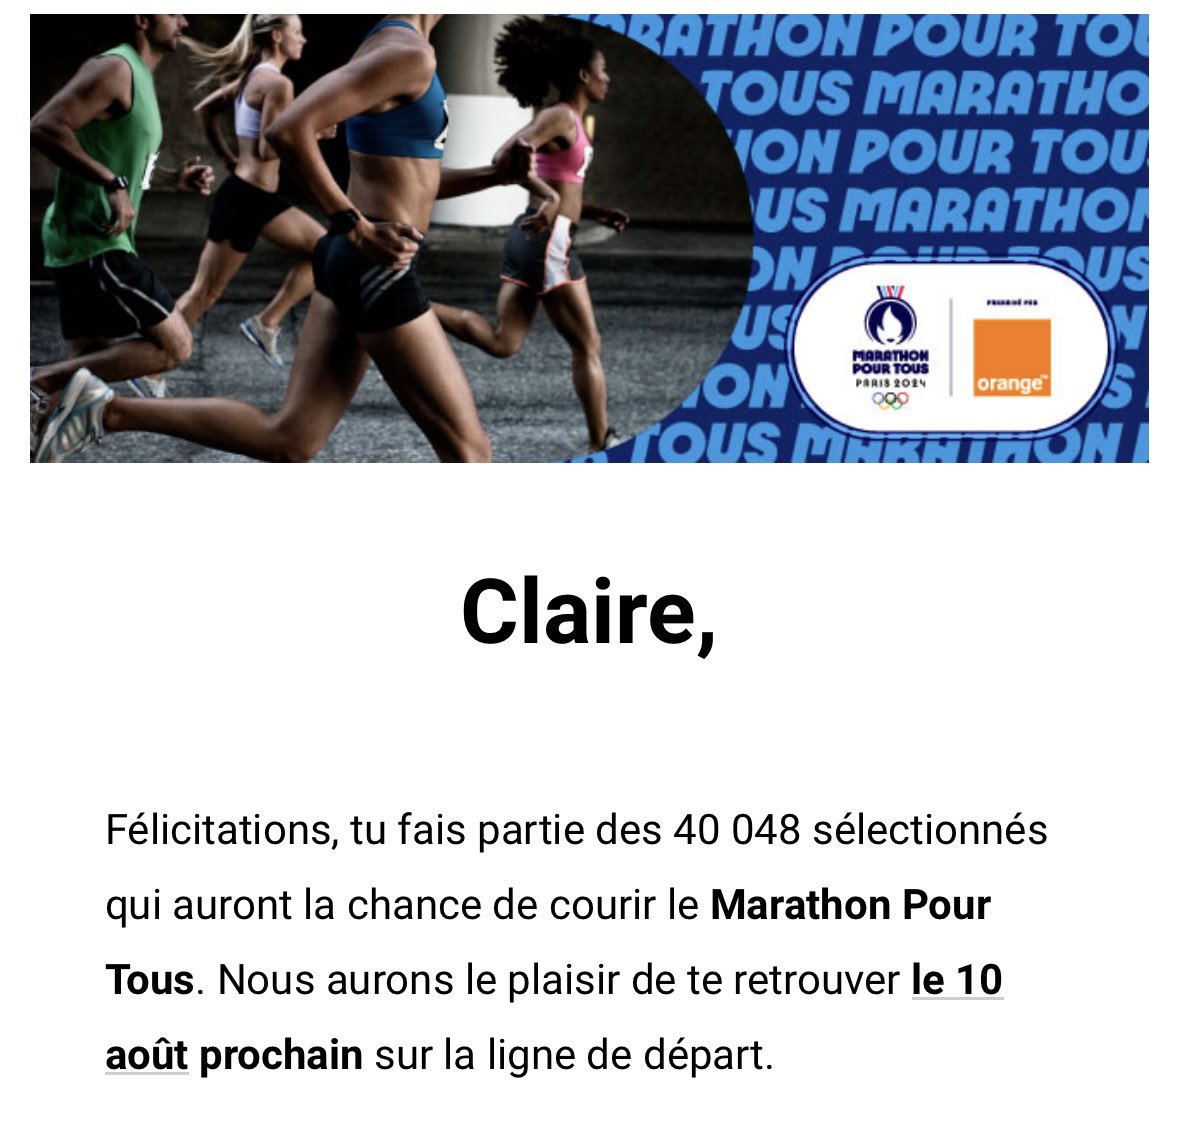 Un rêve éveillé ! Merci @Orange_France  🙏😱🥰💪 #teamkine #marathonpourtous Go continuer la prépa !